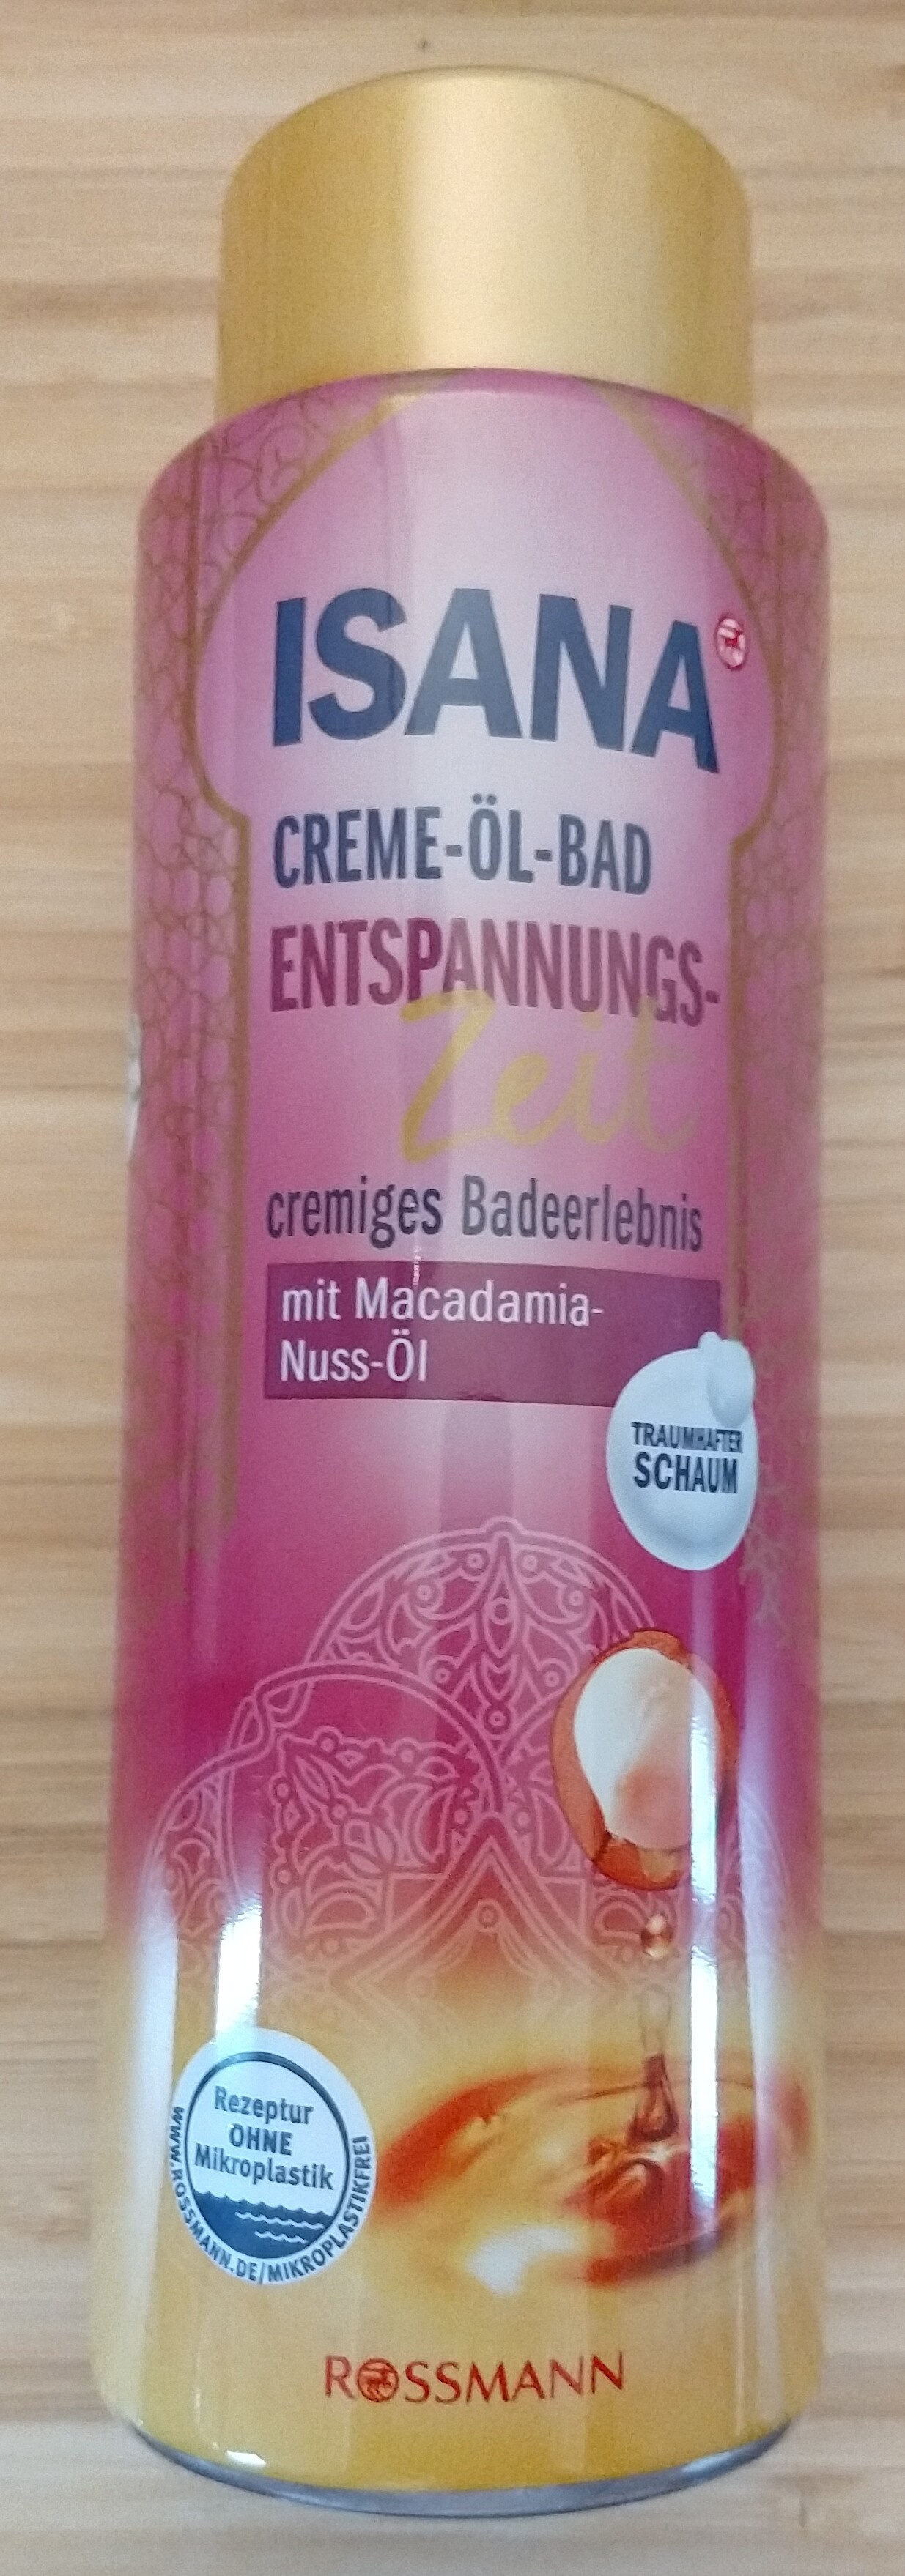 CREME-ÖL-BAD ENTSPANNUNGS-Zeit cremiges Badeerlebnis mit Macadamia-Nuss-Öl - Produit - de